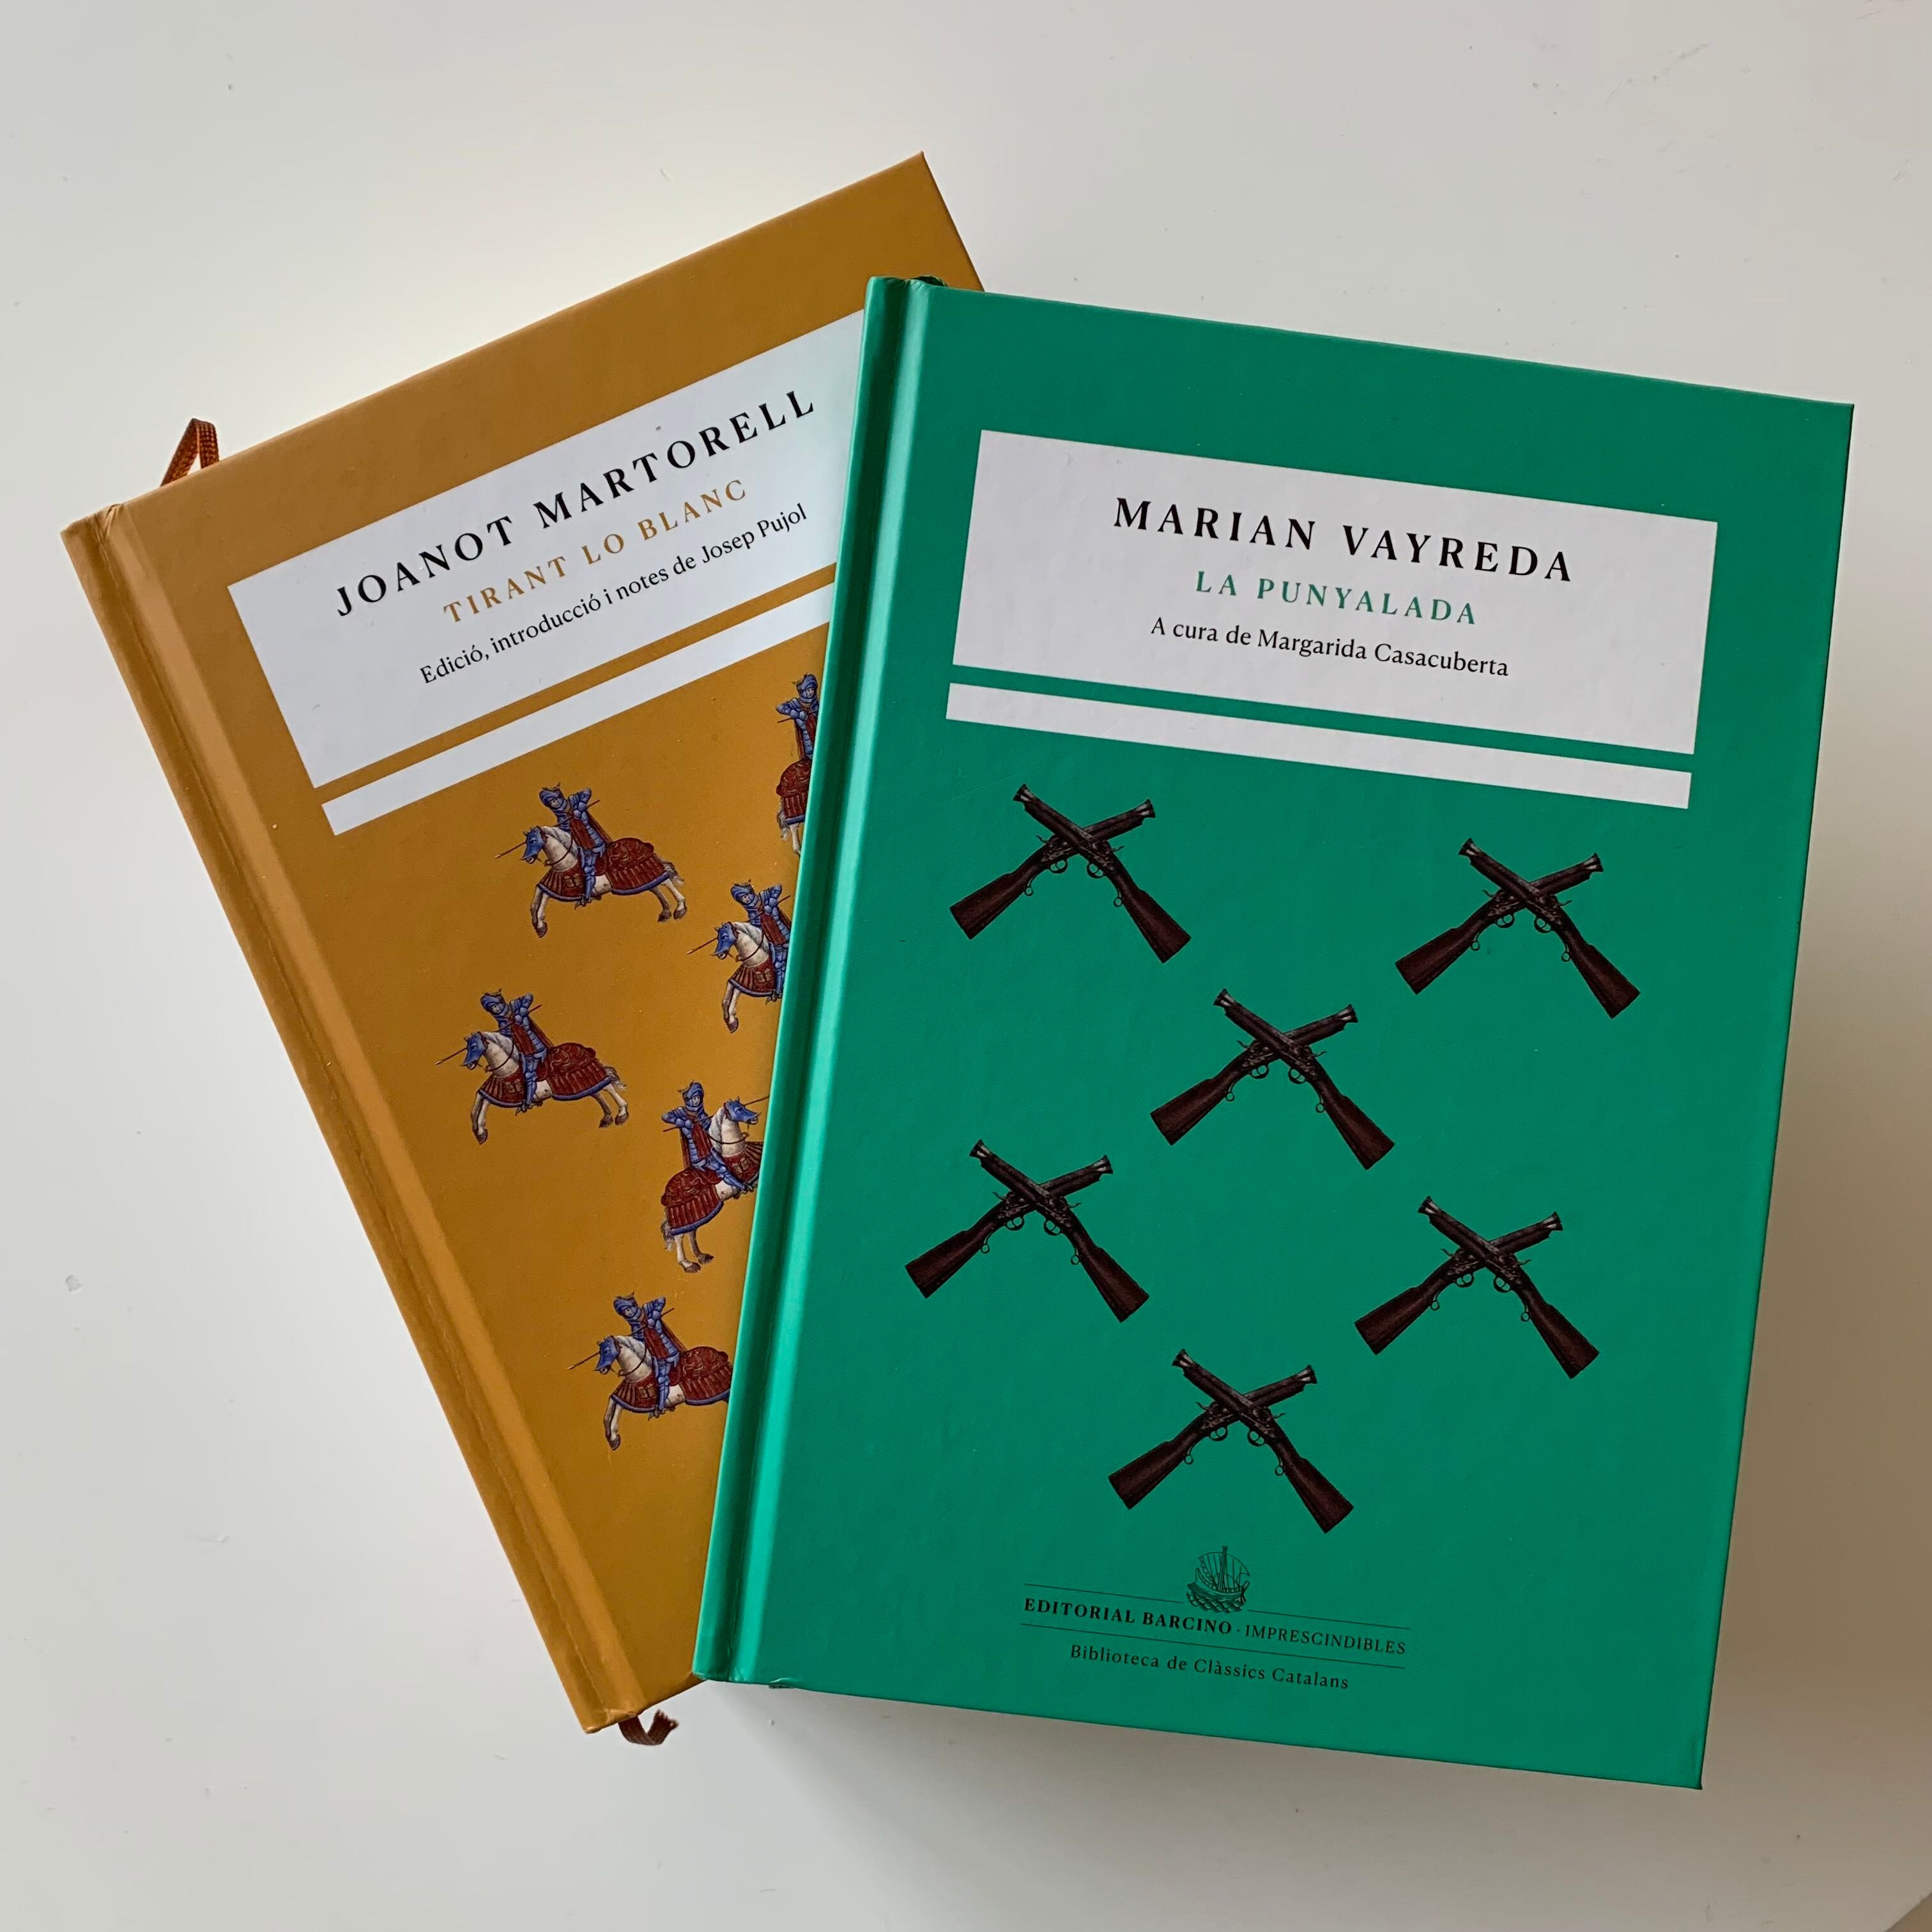 'Tirant lo Blanc', de Joanot Martorell,  y 'La punyalada', de Marian Vayreda, los dos primeros títulos de Imprescindibles, la nueva colección de clásicos de la literatura catalana que lanza Barcino.